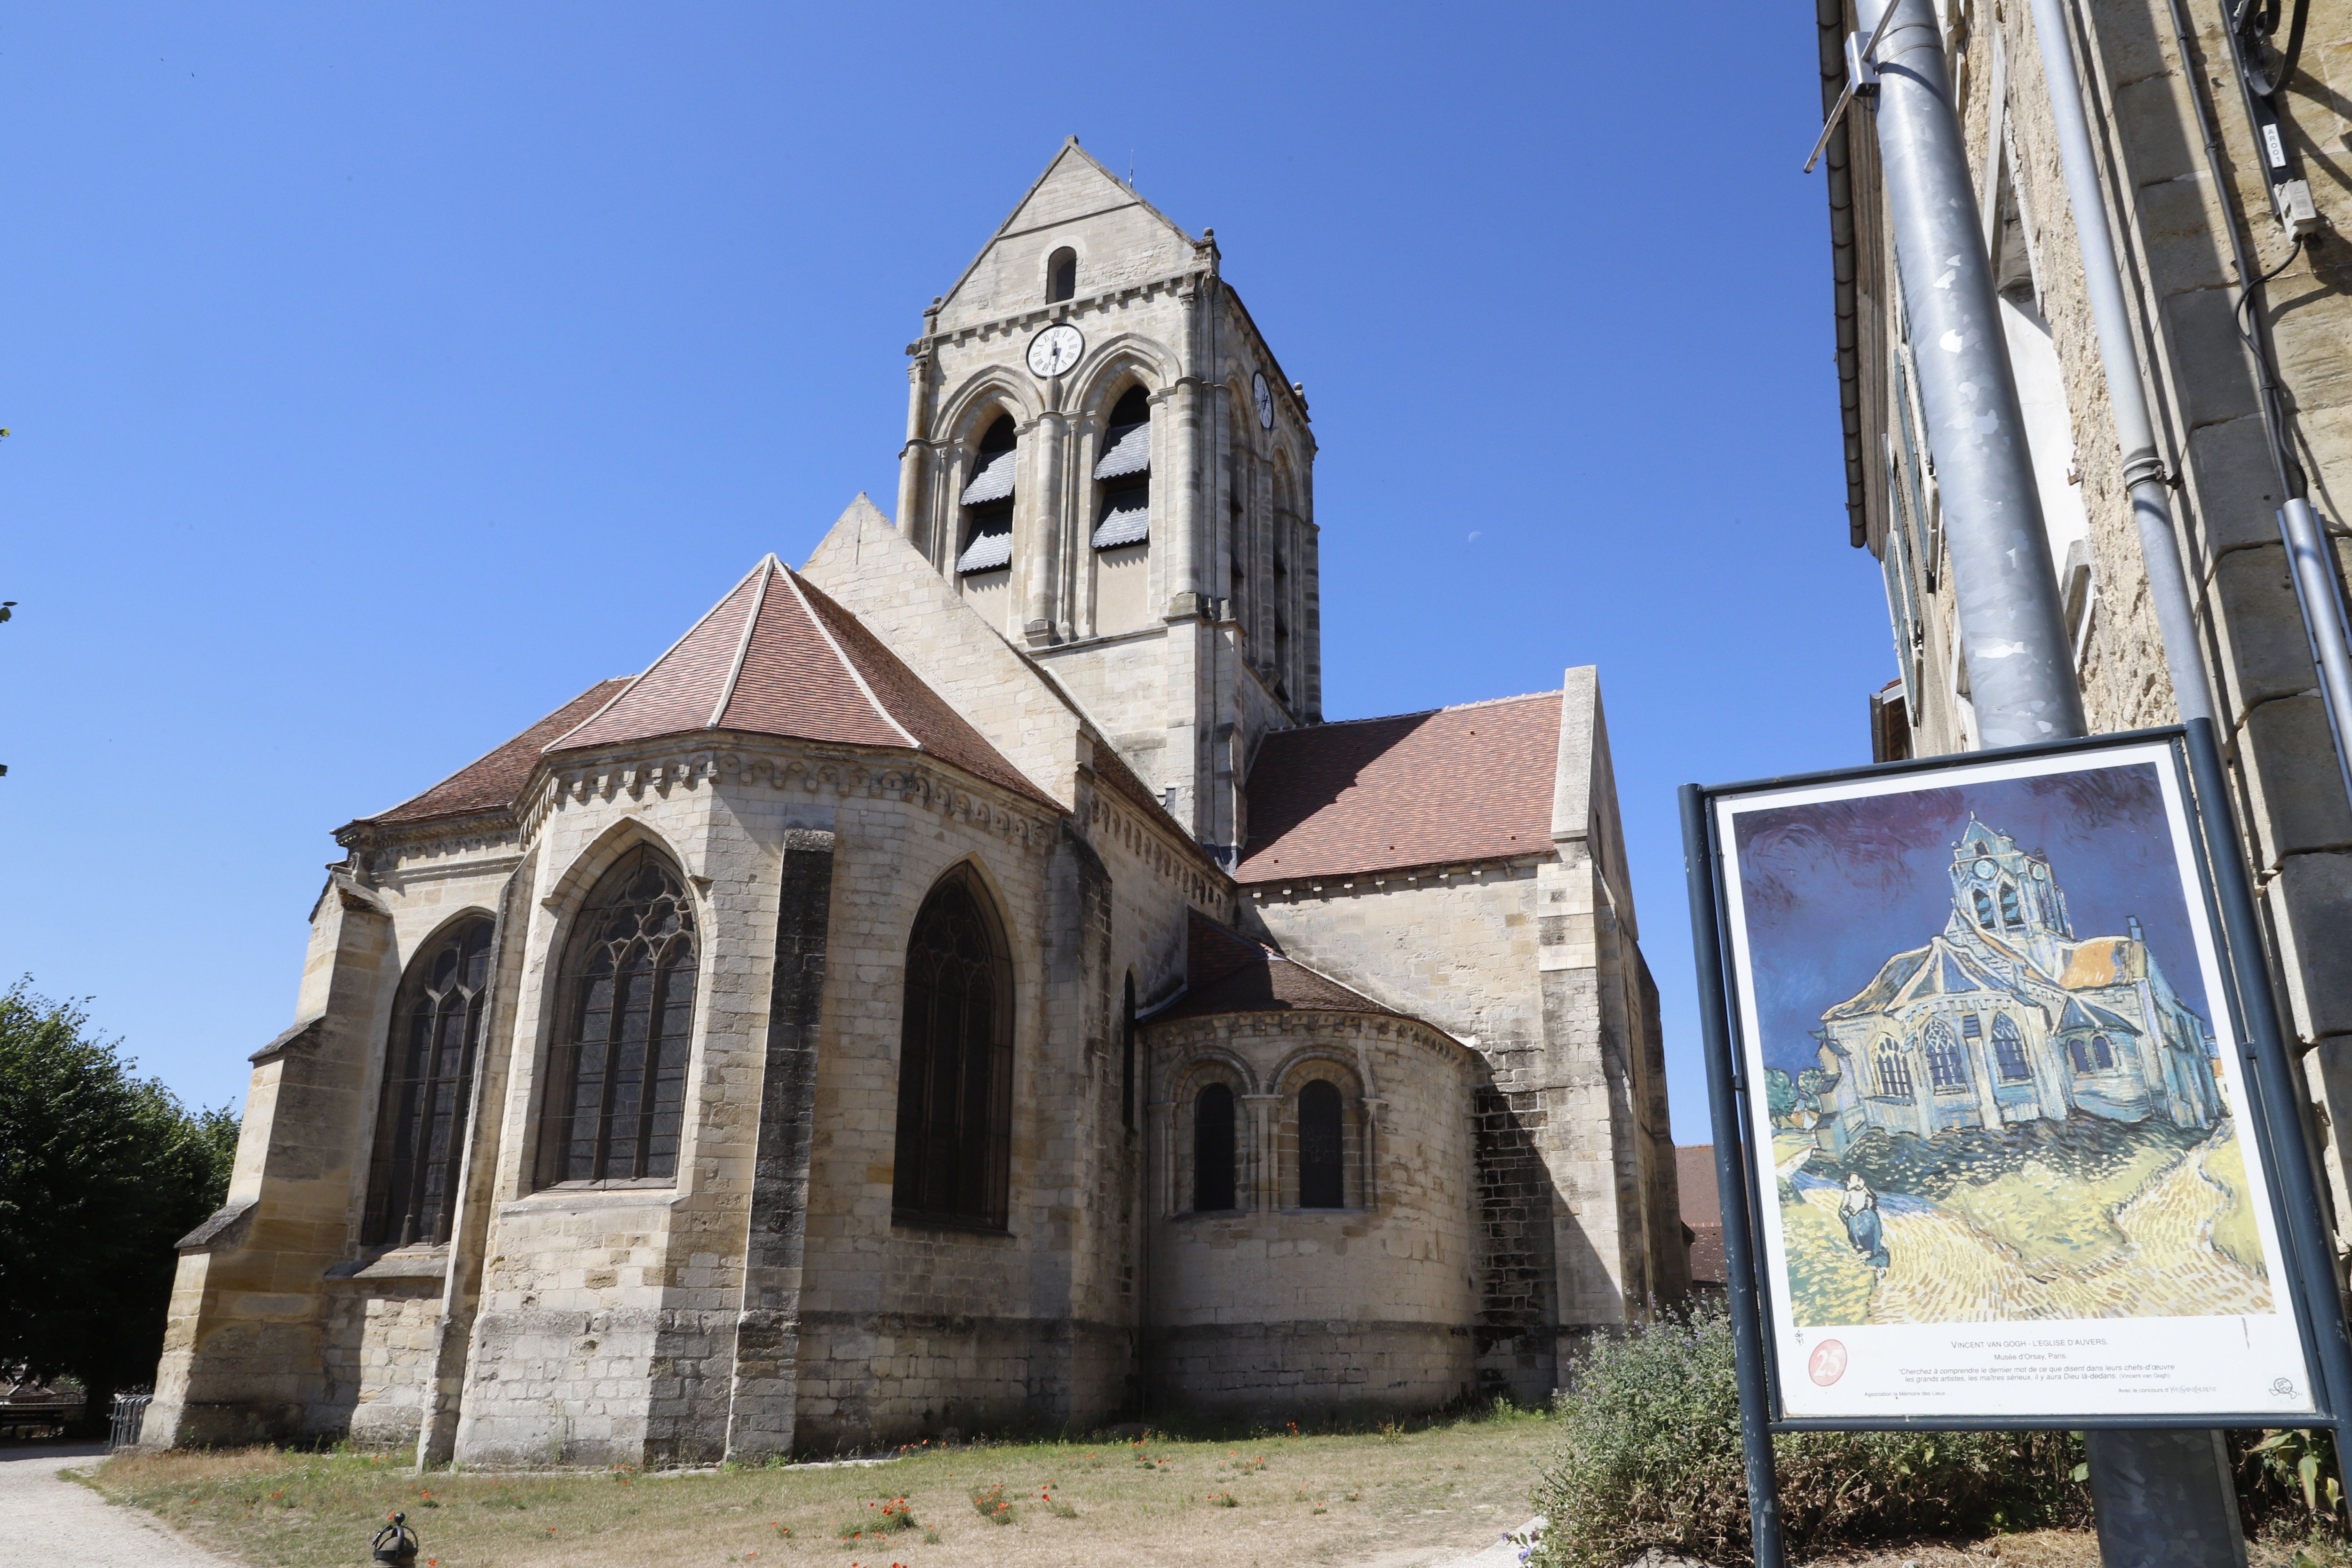 « Van Gogh met en route des projets très ambitieux comme l’église d’Auvers, qui est une véritable démonstration de force », explique Wouter van der Veen. LP/Delphine Goldsztejn